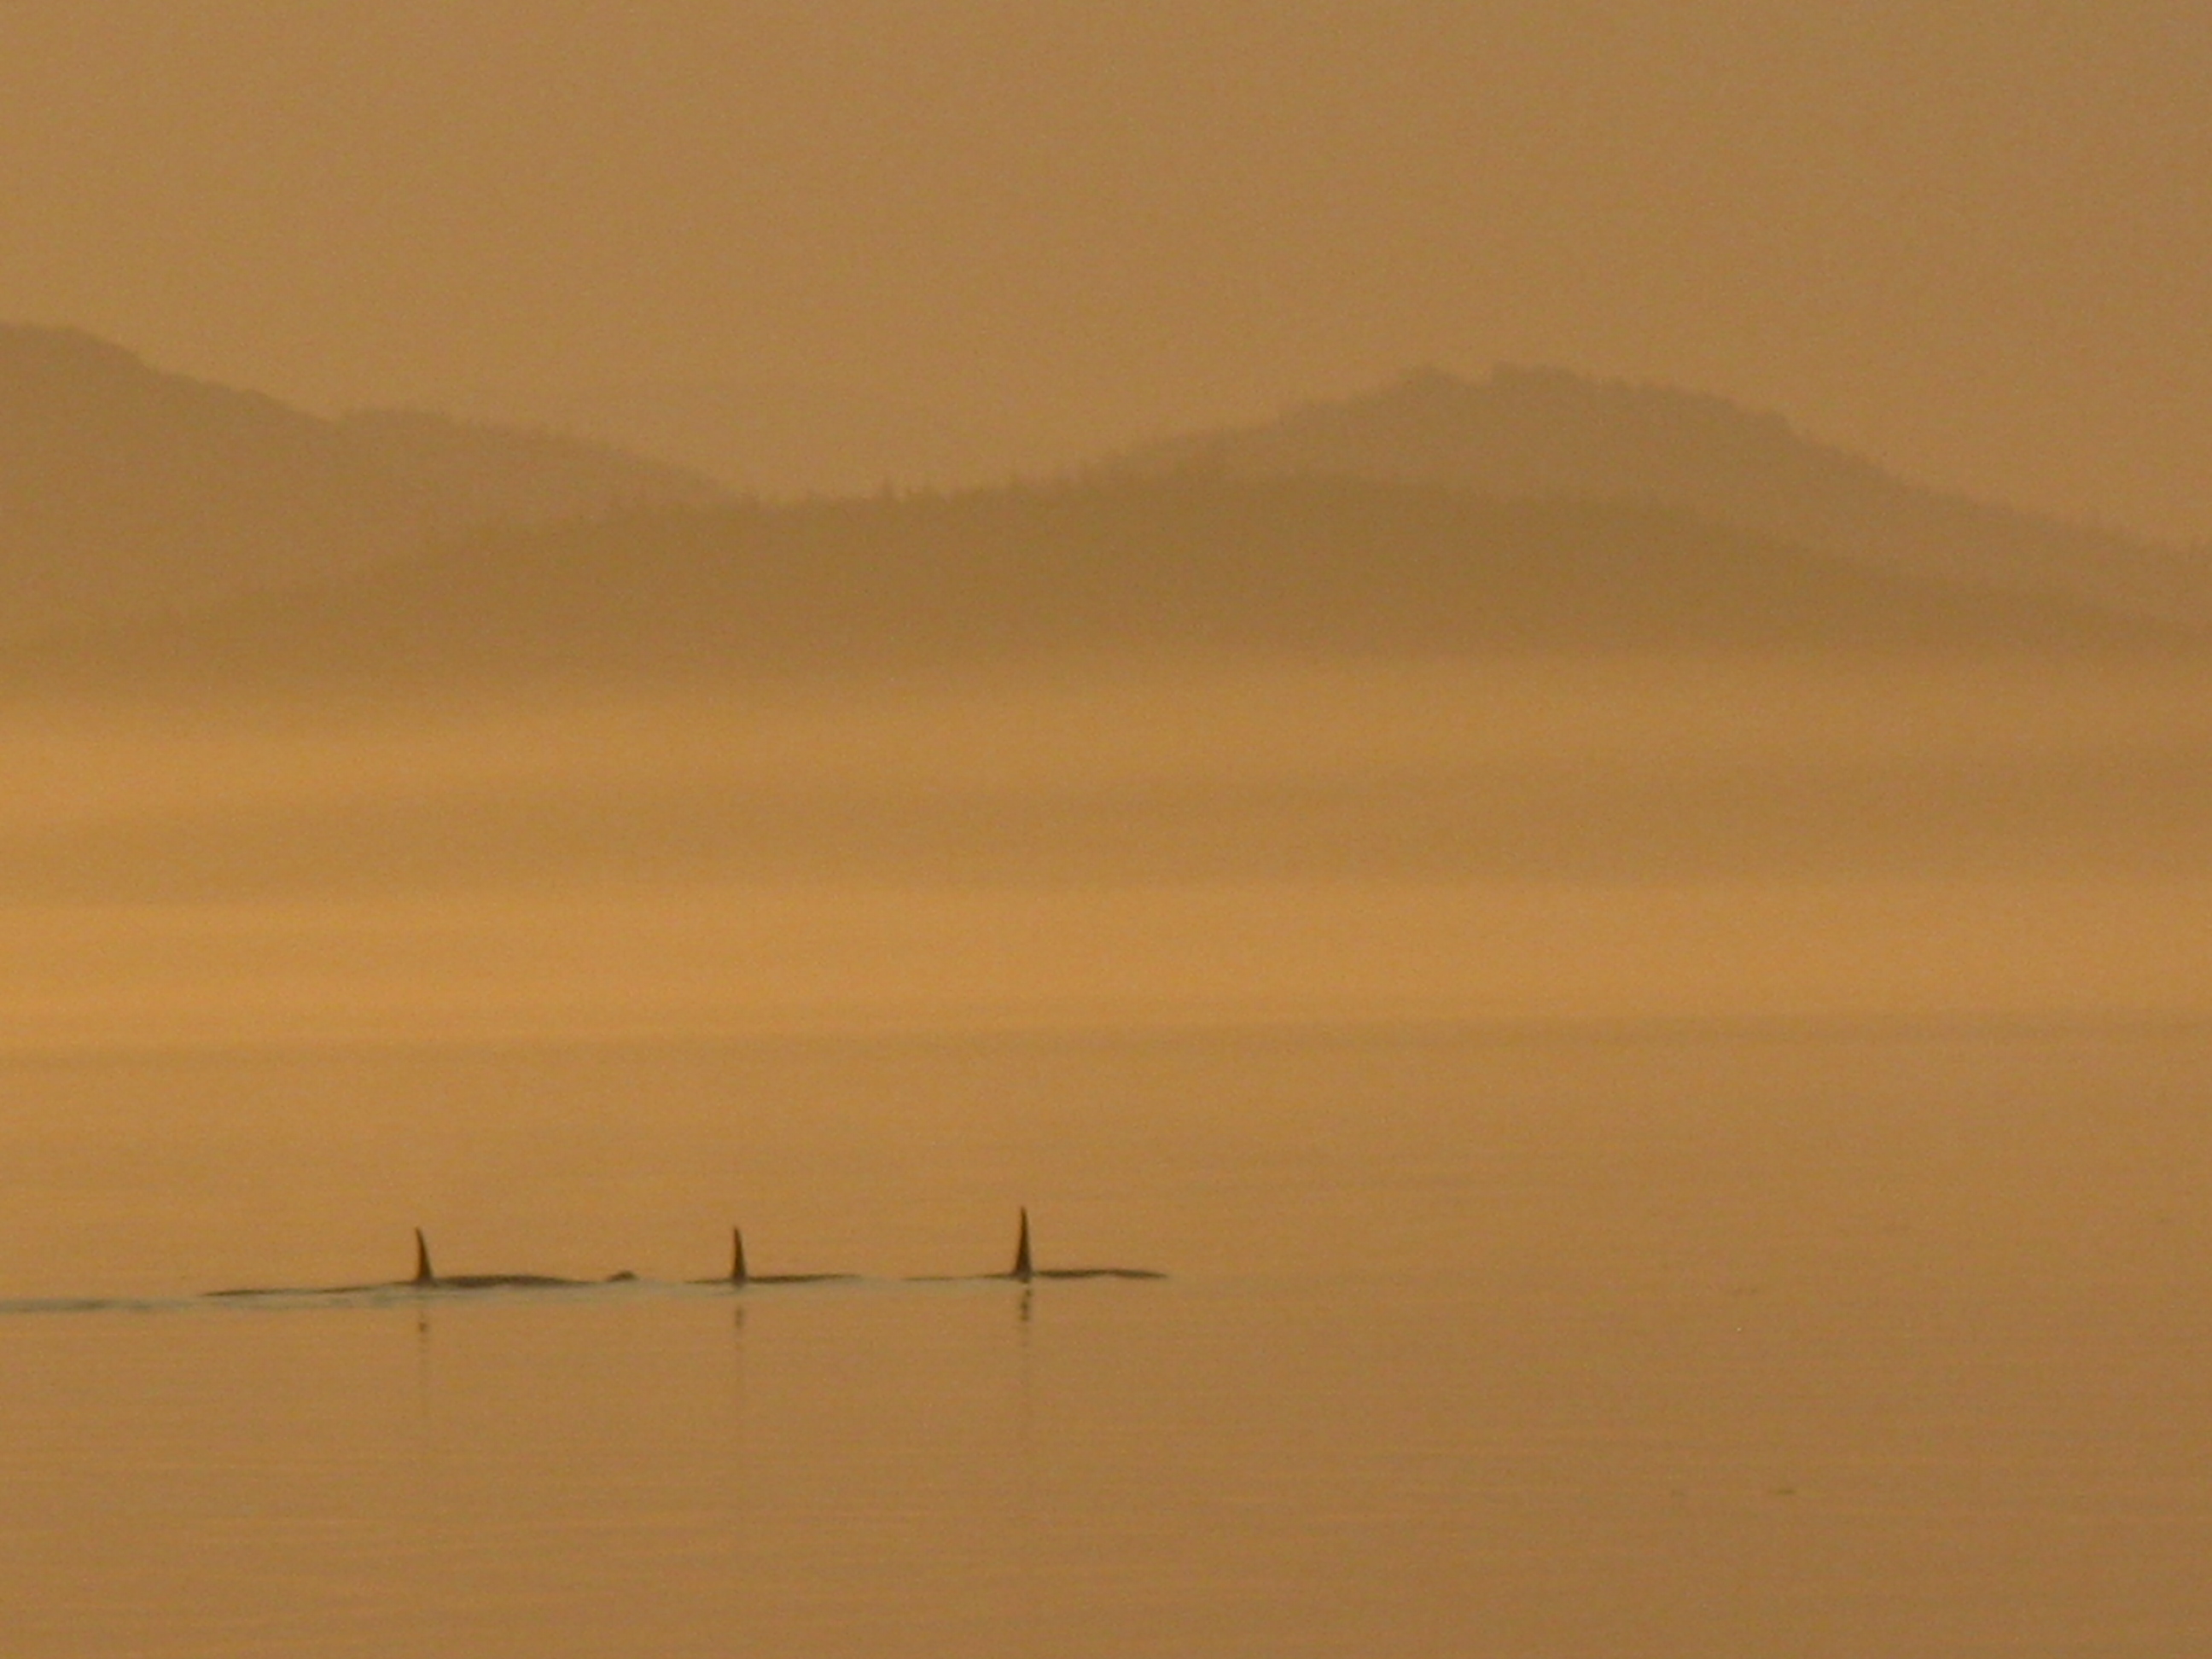 Orcas in the fog near Robson Bight